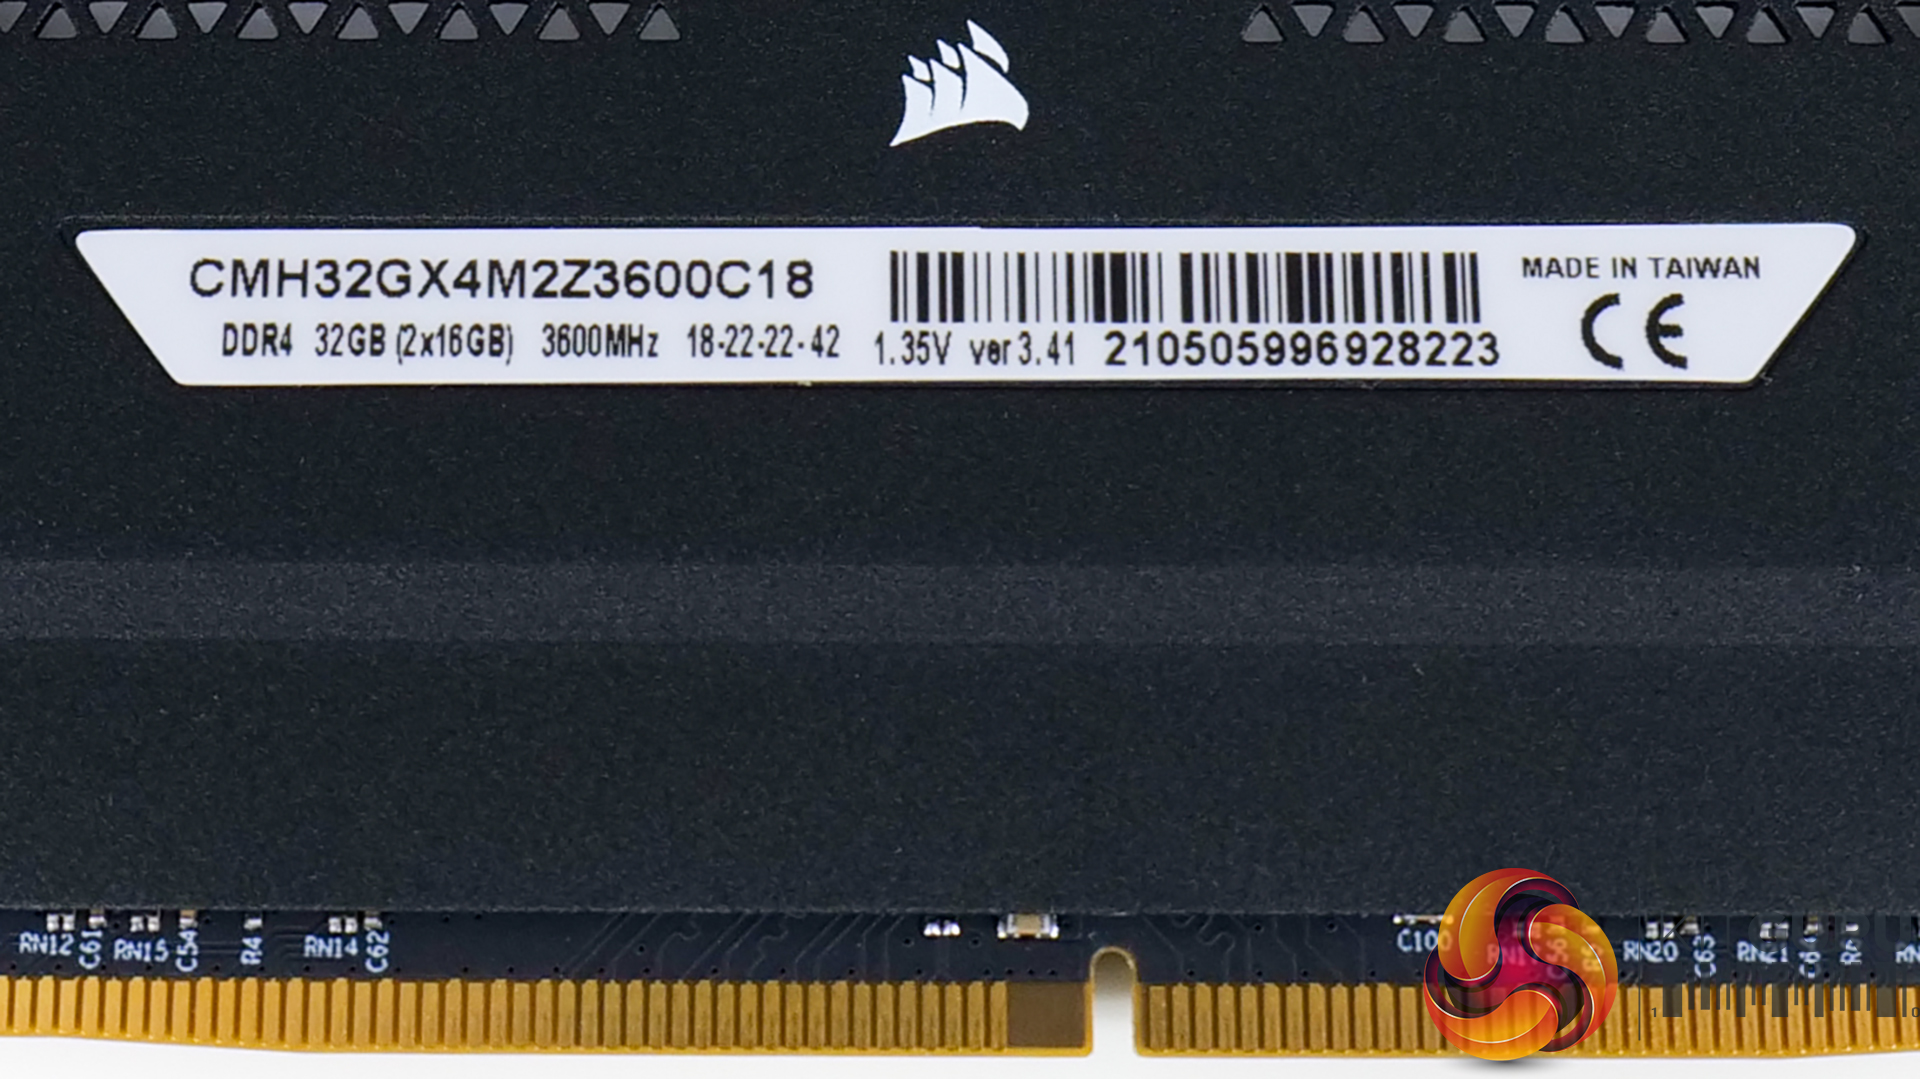 Corsair Vengeance RGB Pro SL 3600MHz 32GB Memory Review | KitGuru